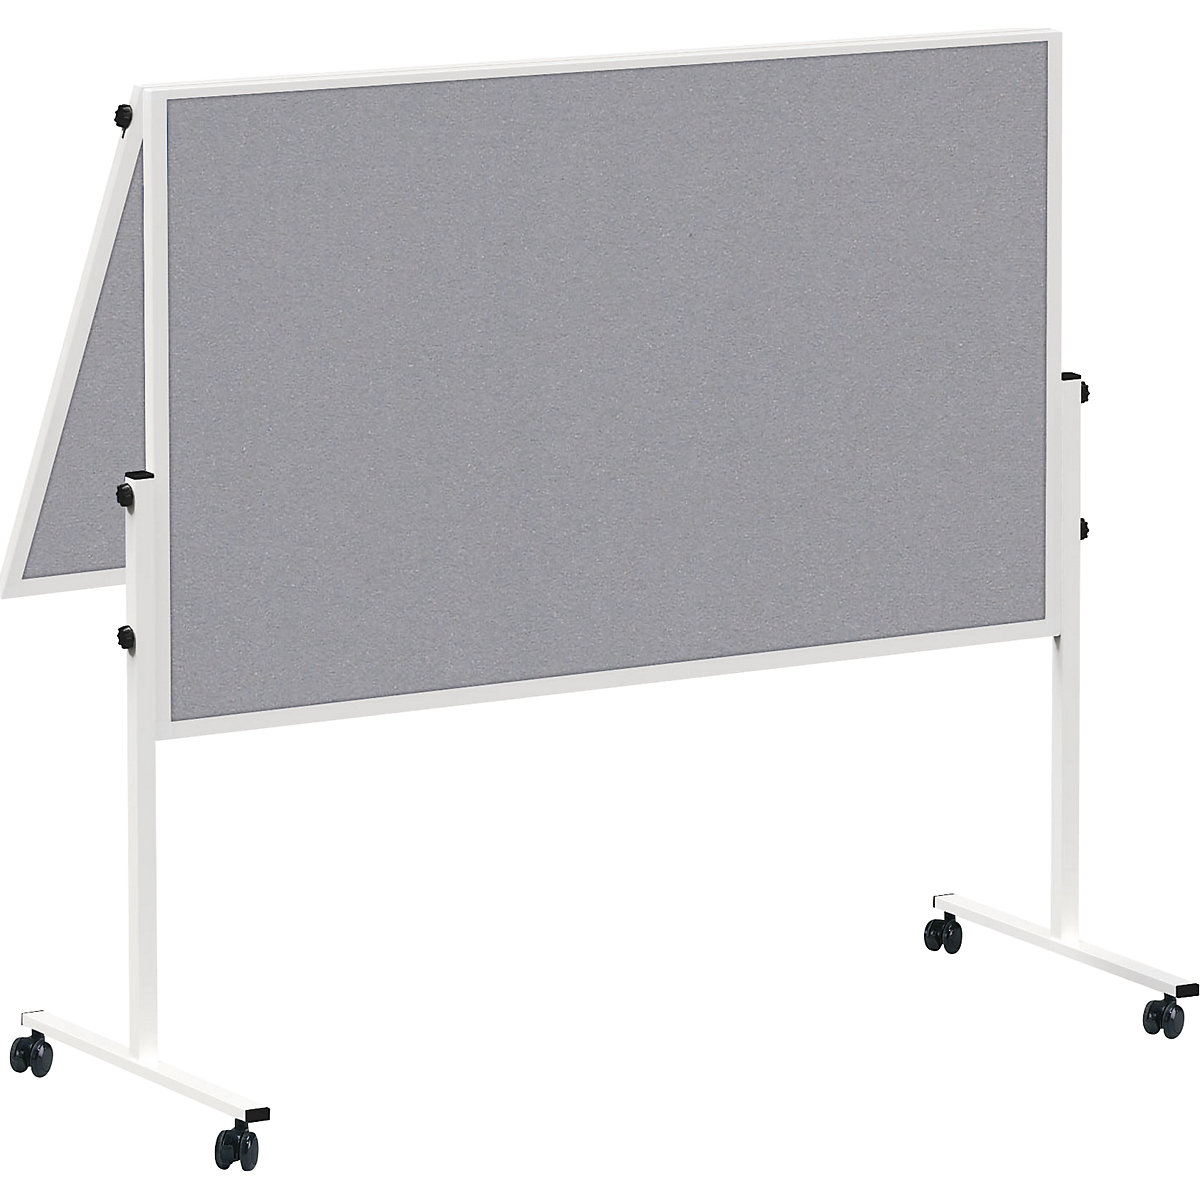 MAULsolid presentation board, mobile – MAUL, folding, felt colour grey-5